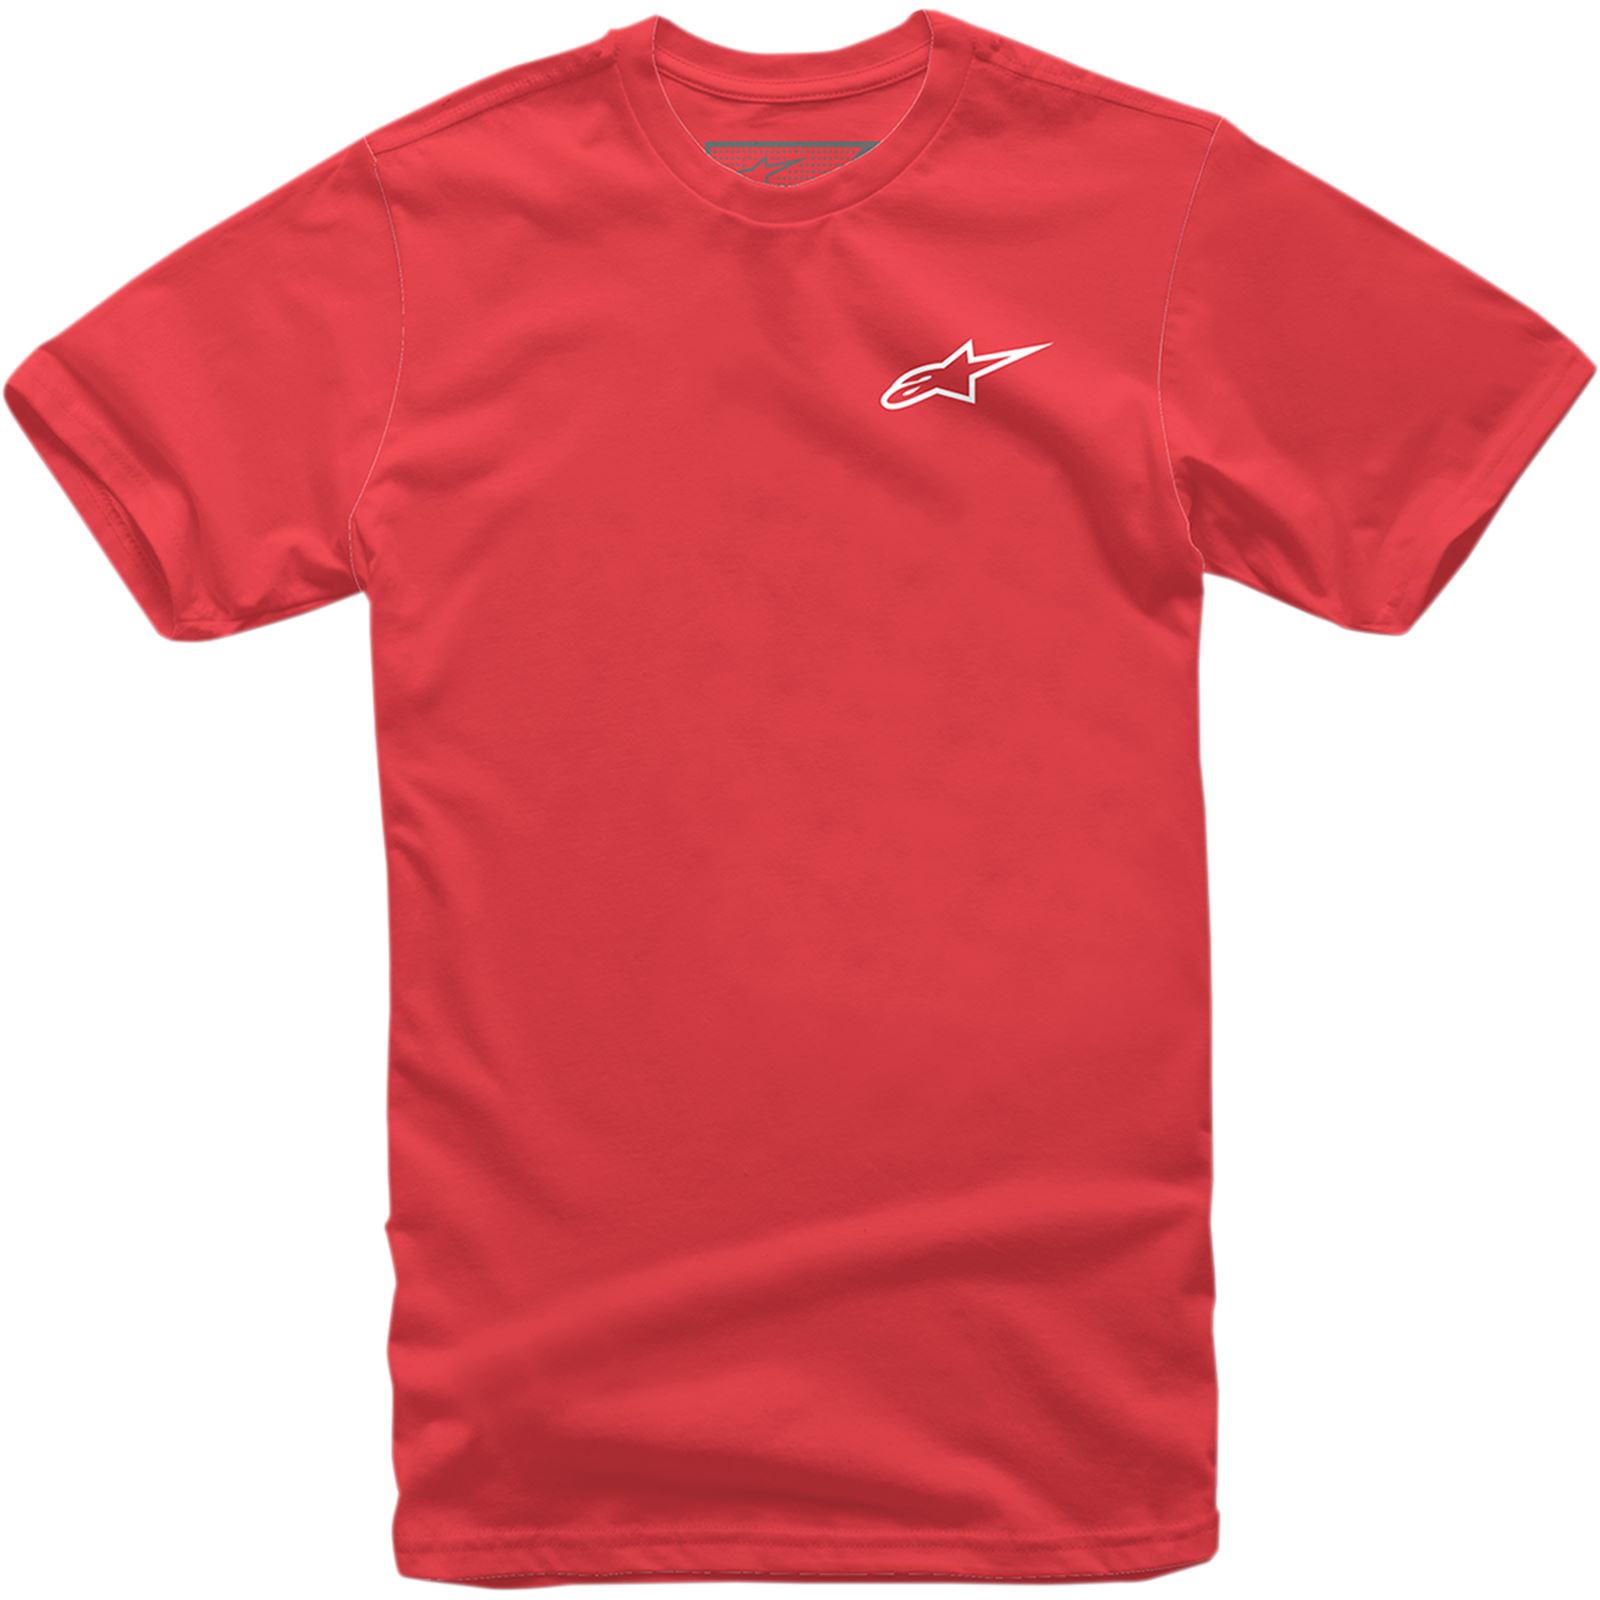 Alpinestars Neu Ageless T-Shirt - Red/White - Medium